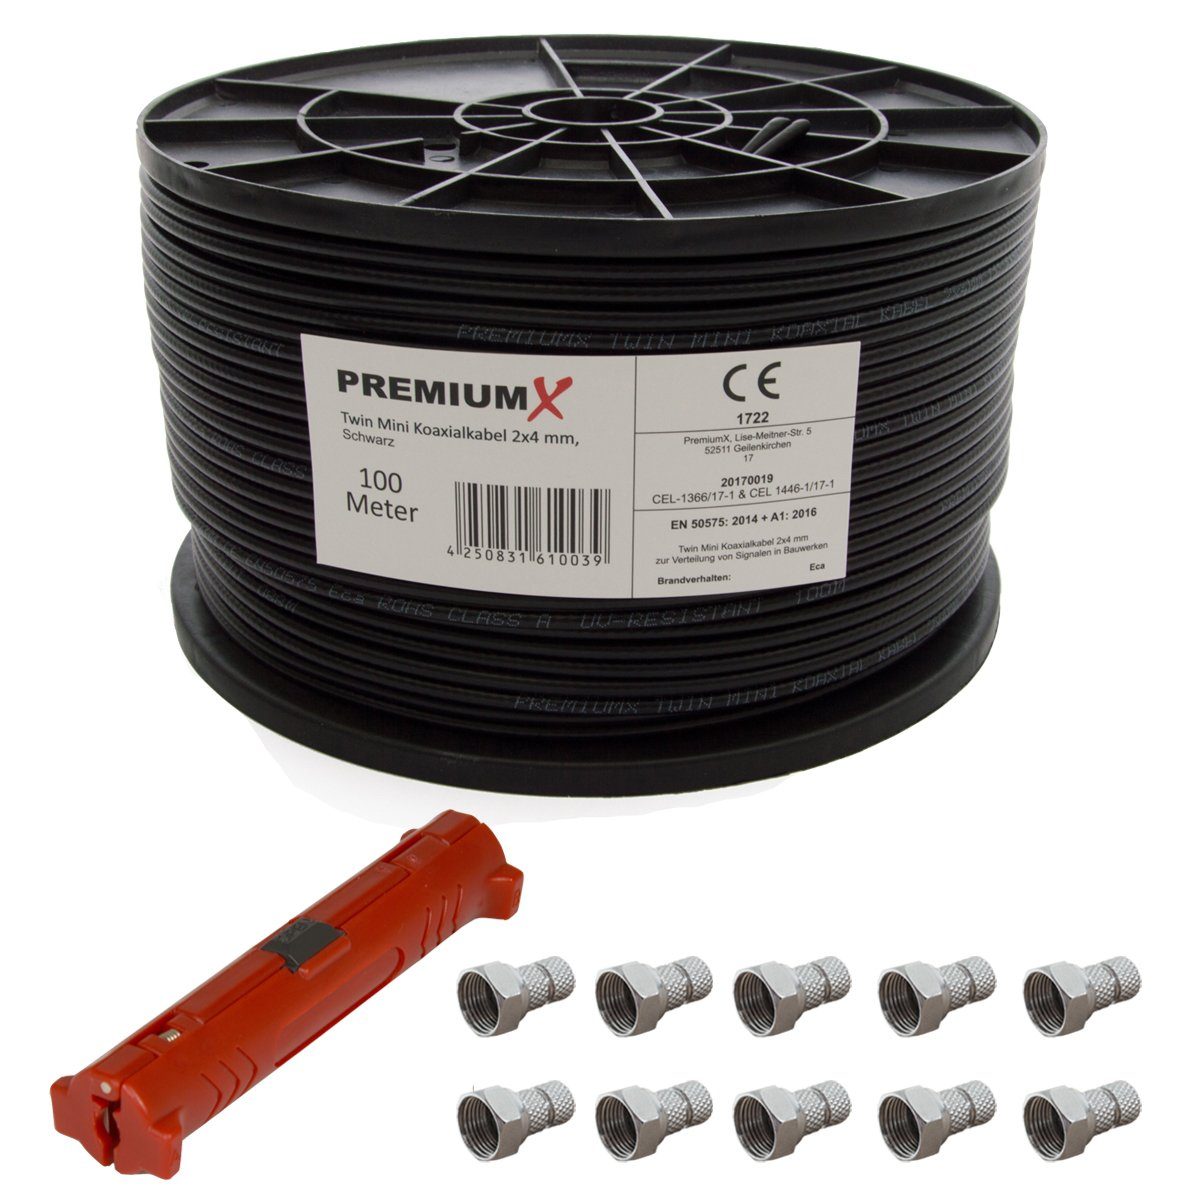 Meter Kabel Mini 2x SAT-Kabel Twin PremiumX + 4 Abisolierwerkzeug Schwarz Sat 90dB 100 mm